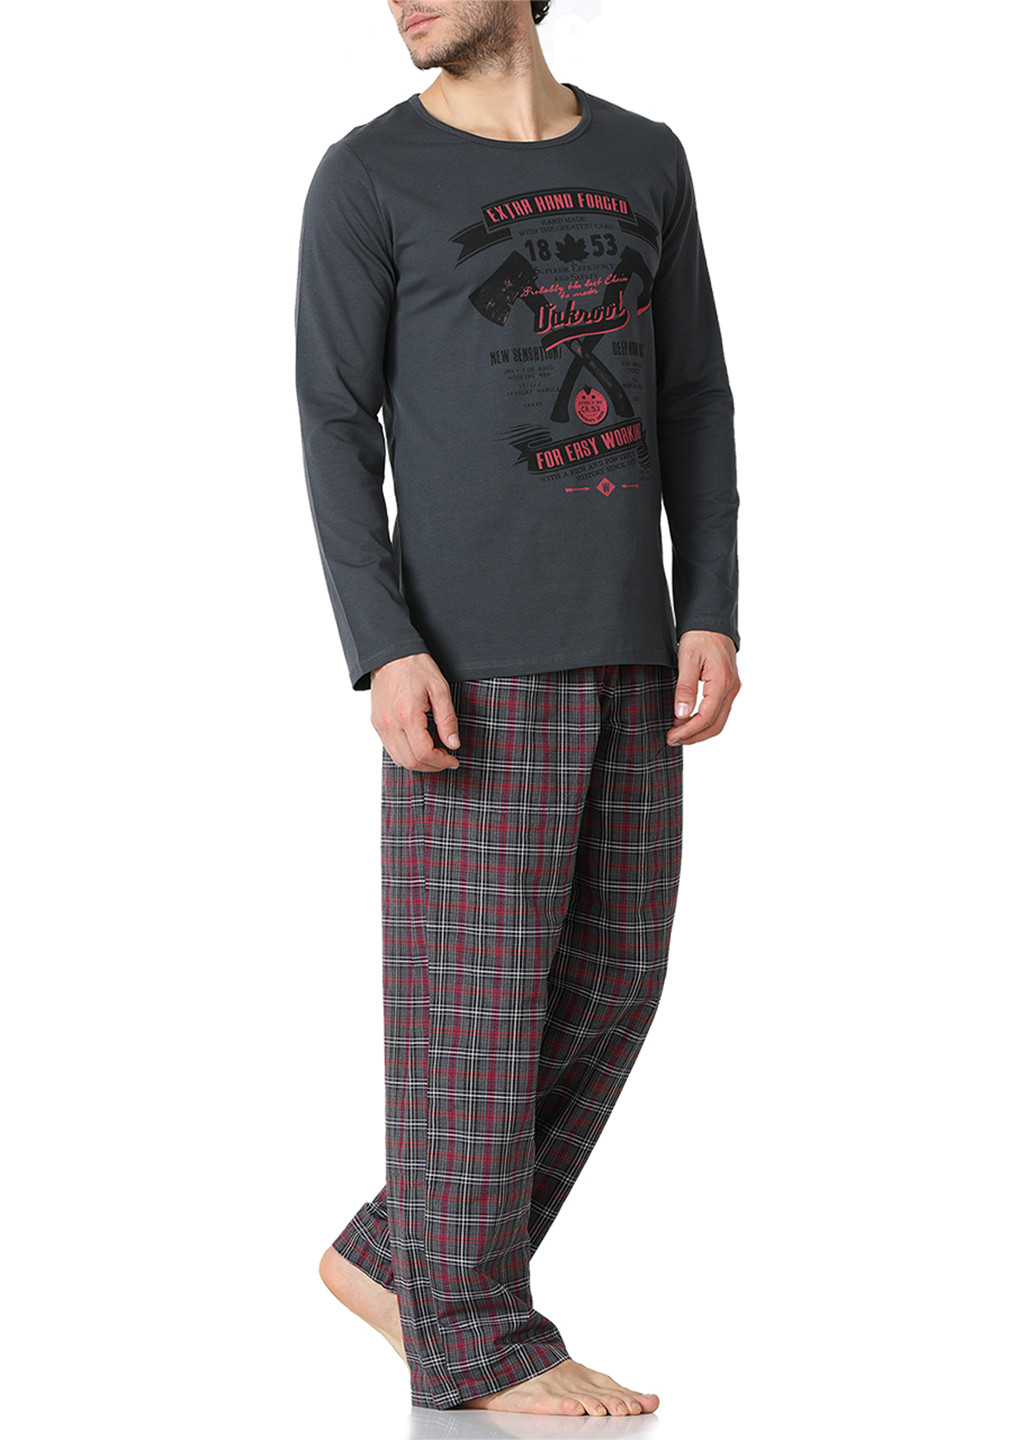 Пижама (лонгслив, брюки) DoReMi лонгслив + брюки рисунок тёмно-серая домашняя хлопок